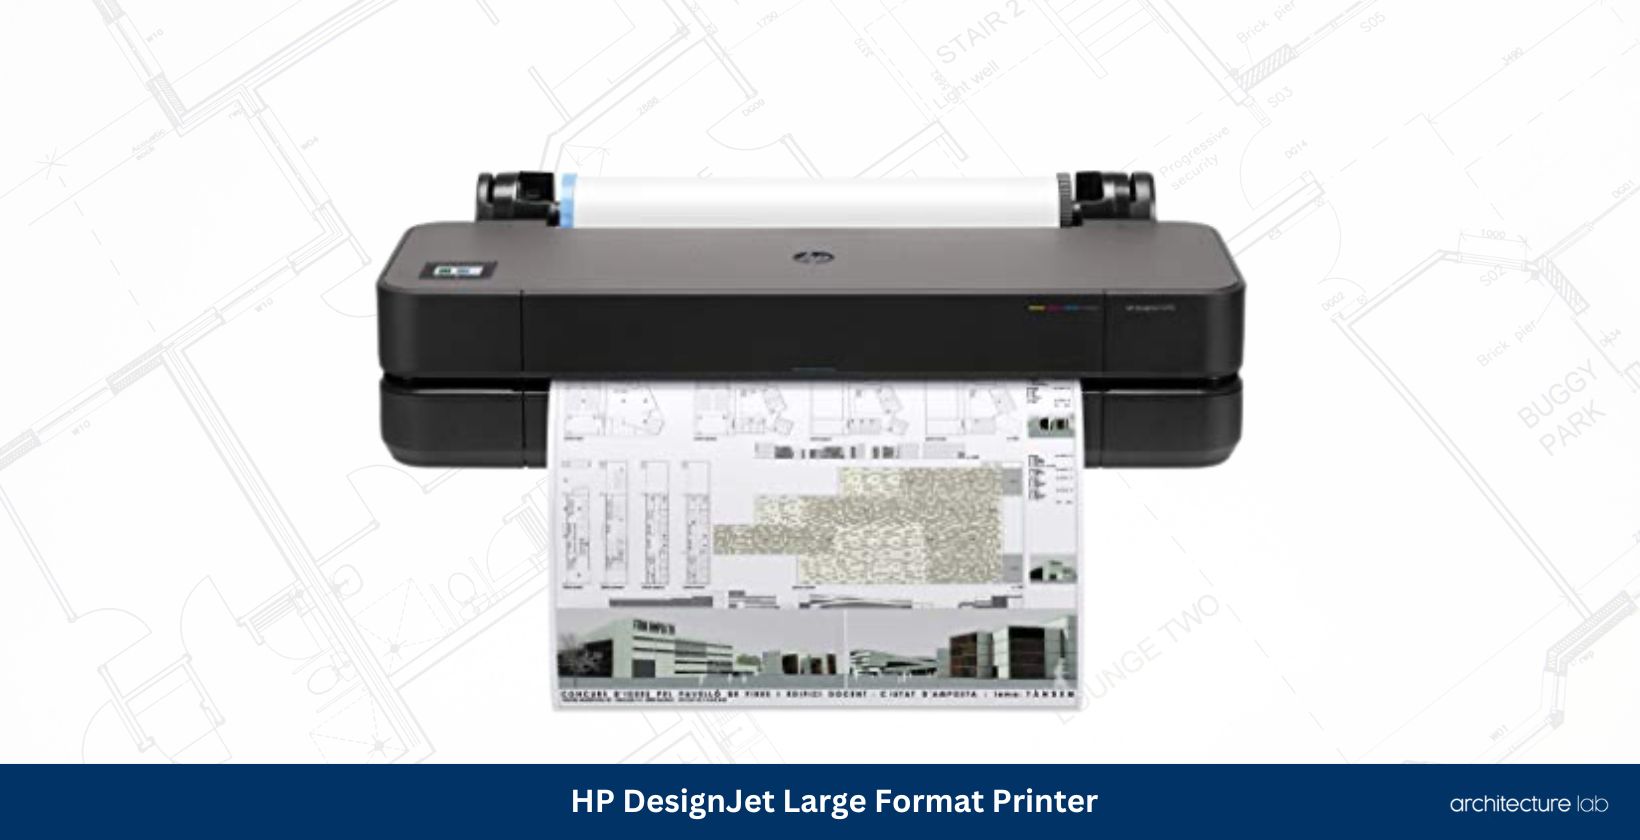 Hp designjet large format printer